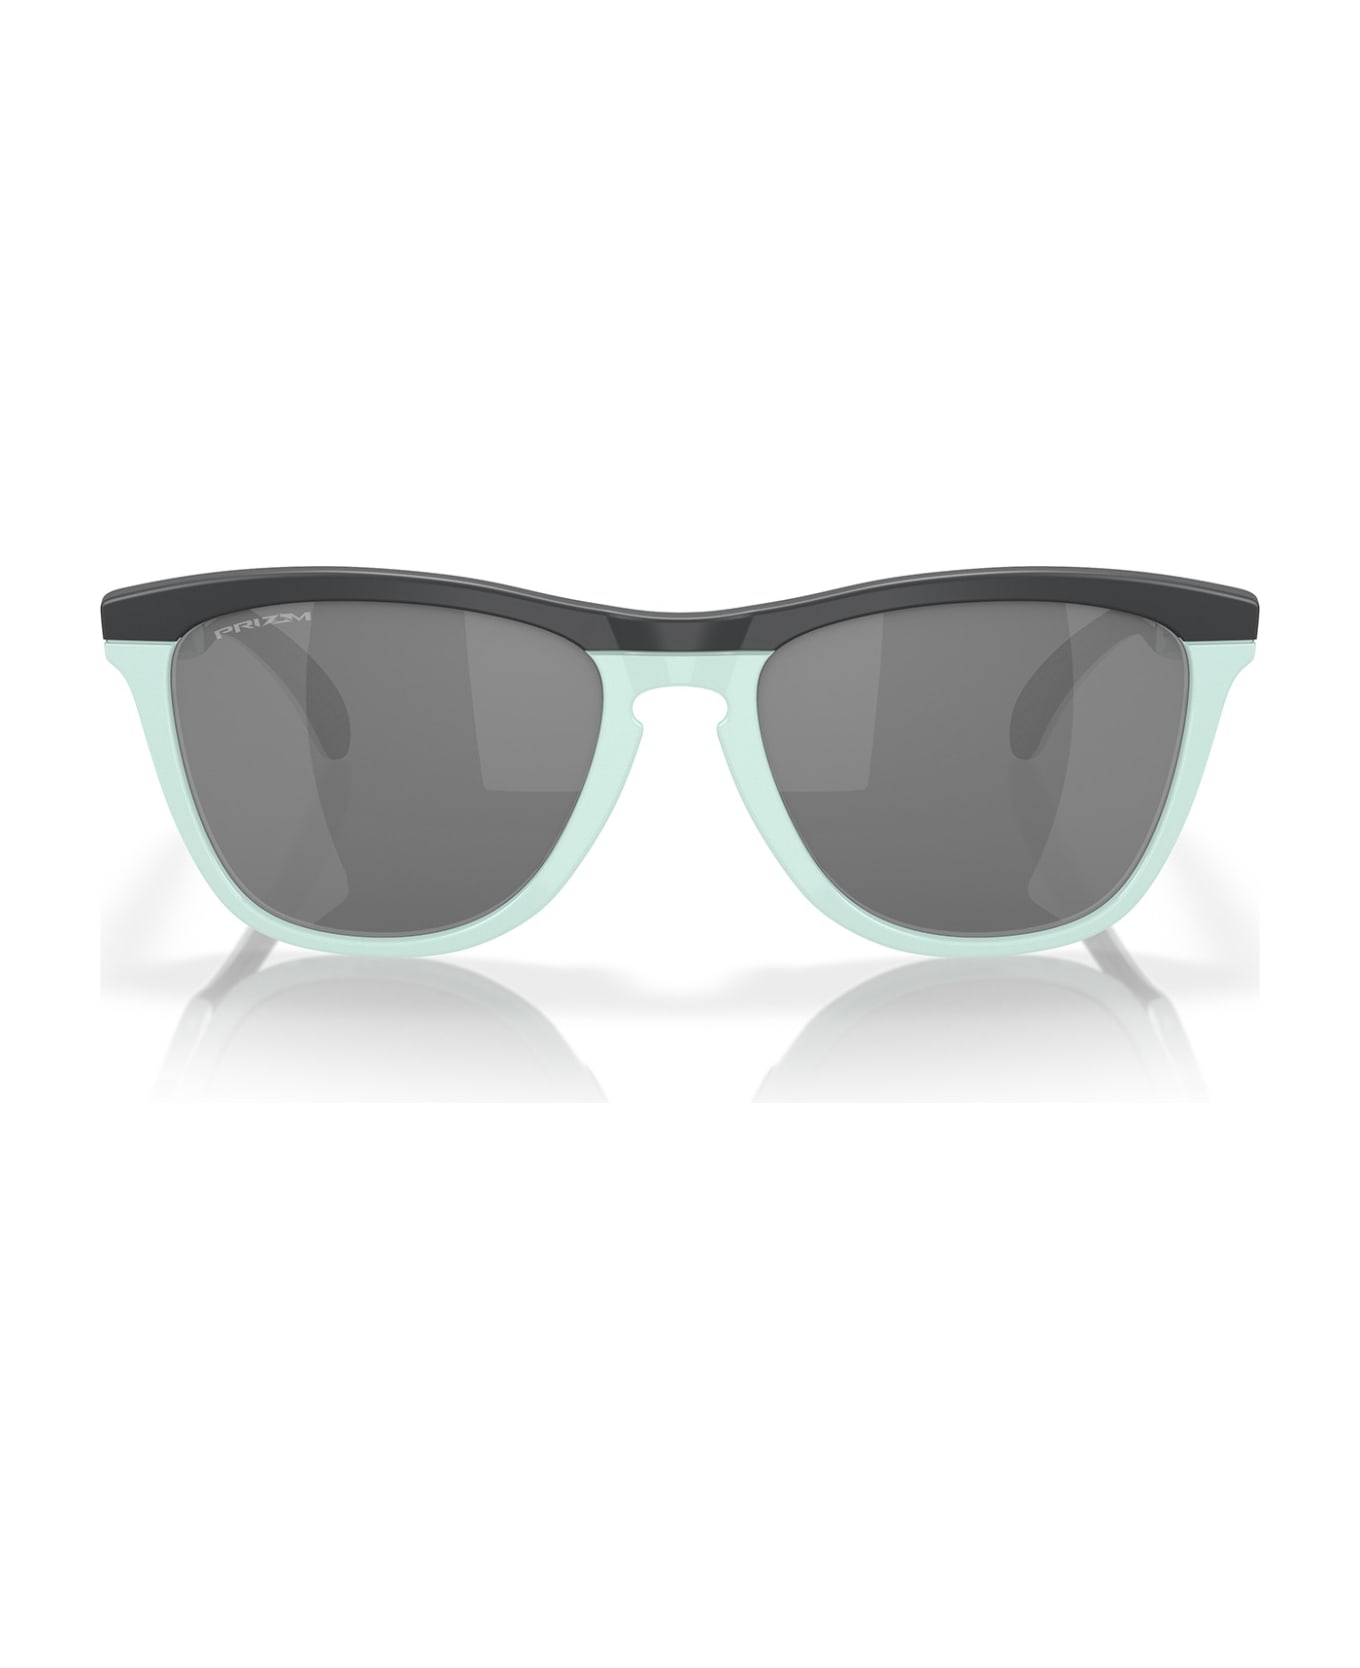 Oakley Oo9284 Matte Carbon / Blue Milkshake Sunglasses - Matte Carbon / Blue Milkshake